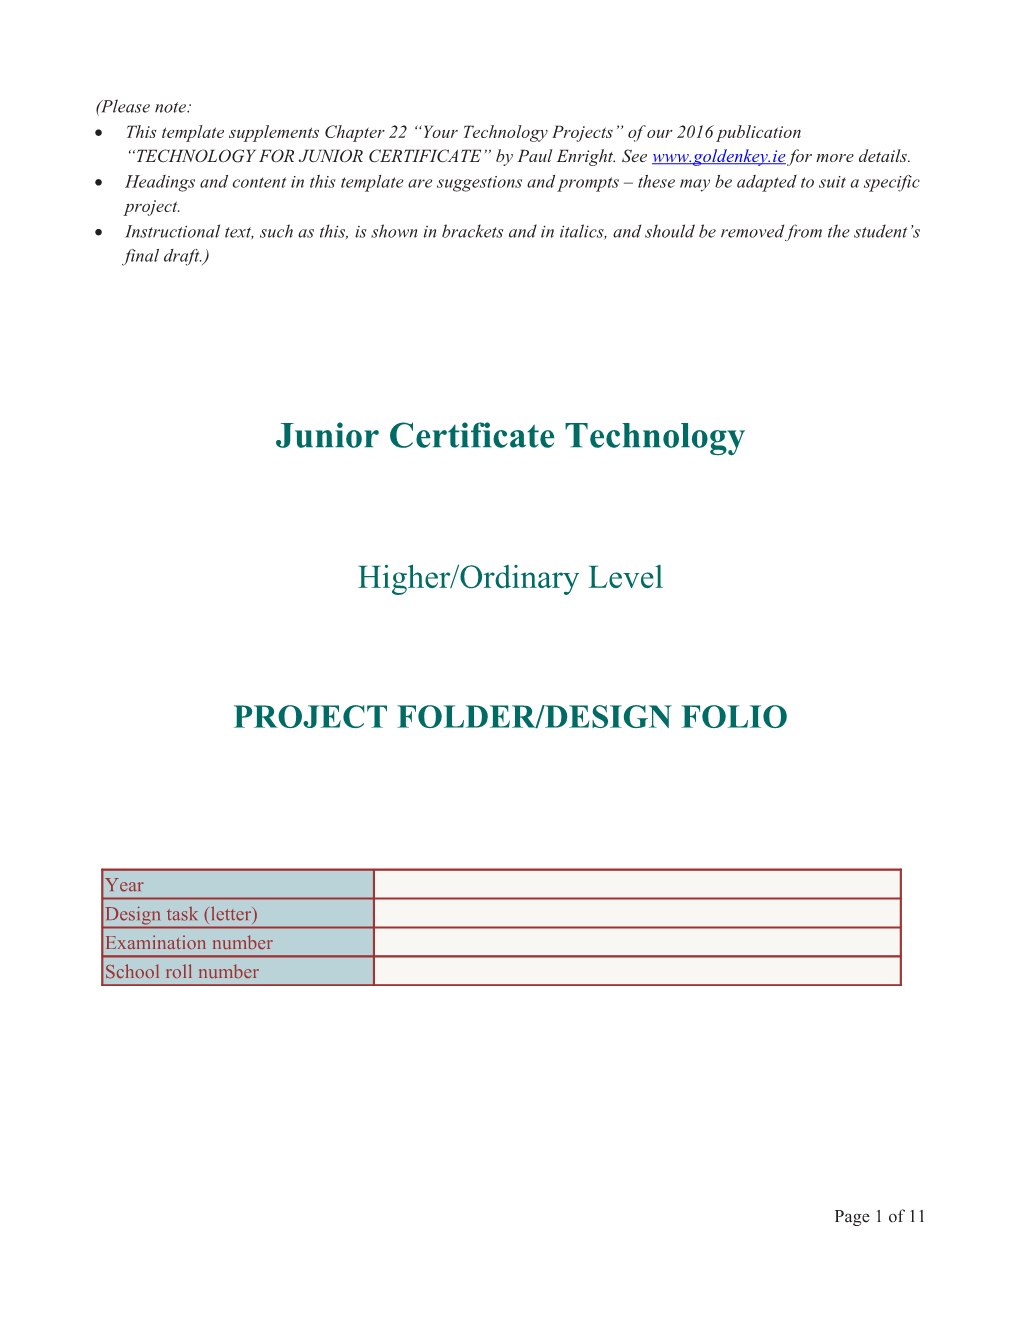 JC Technology Project Folder